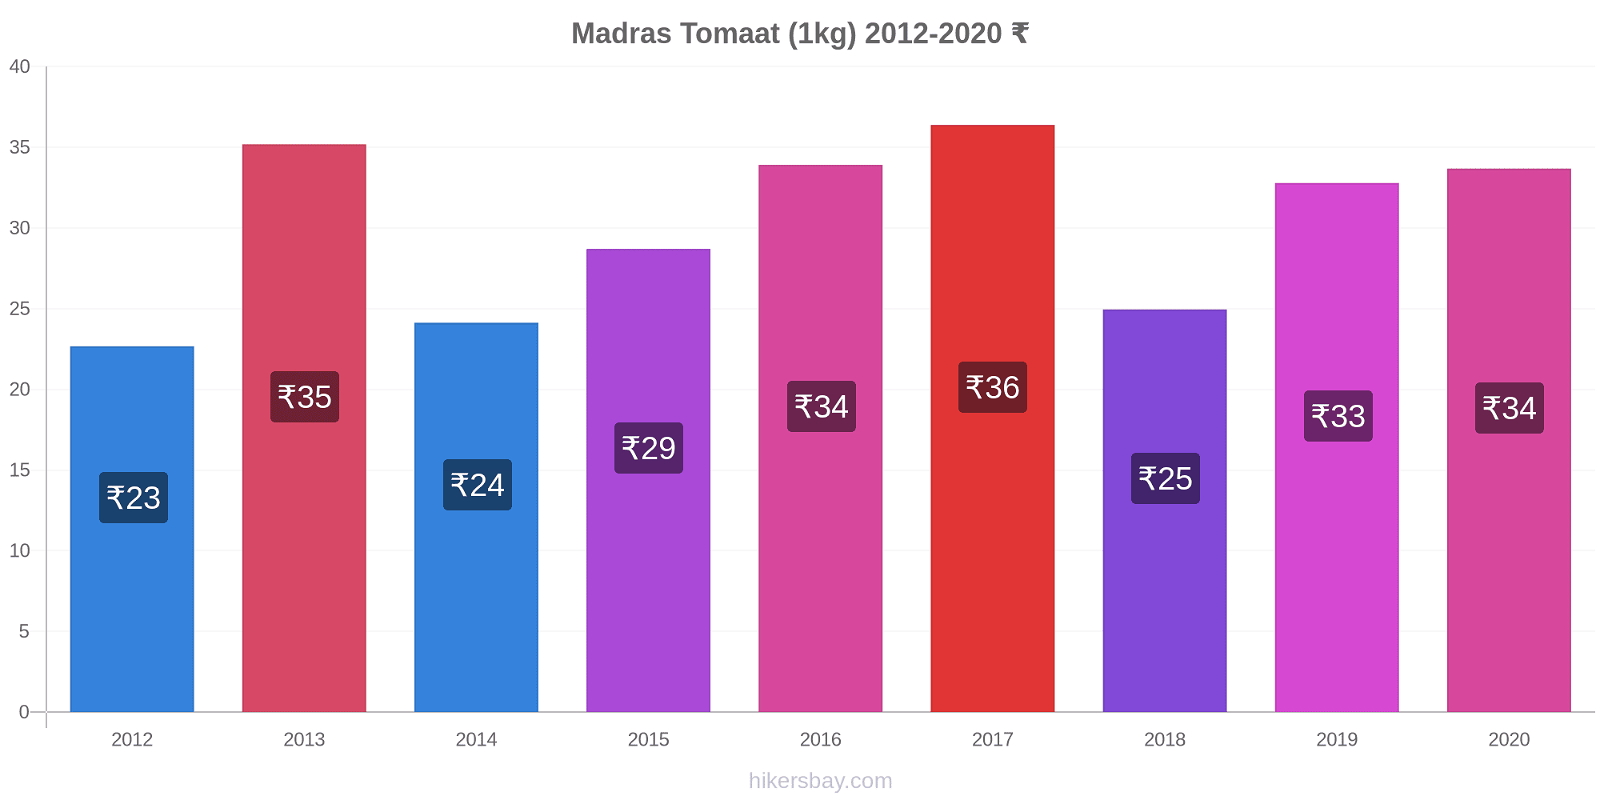 Madras prijswijzigingen Tomaat (1kg) hikersbay.com